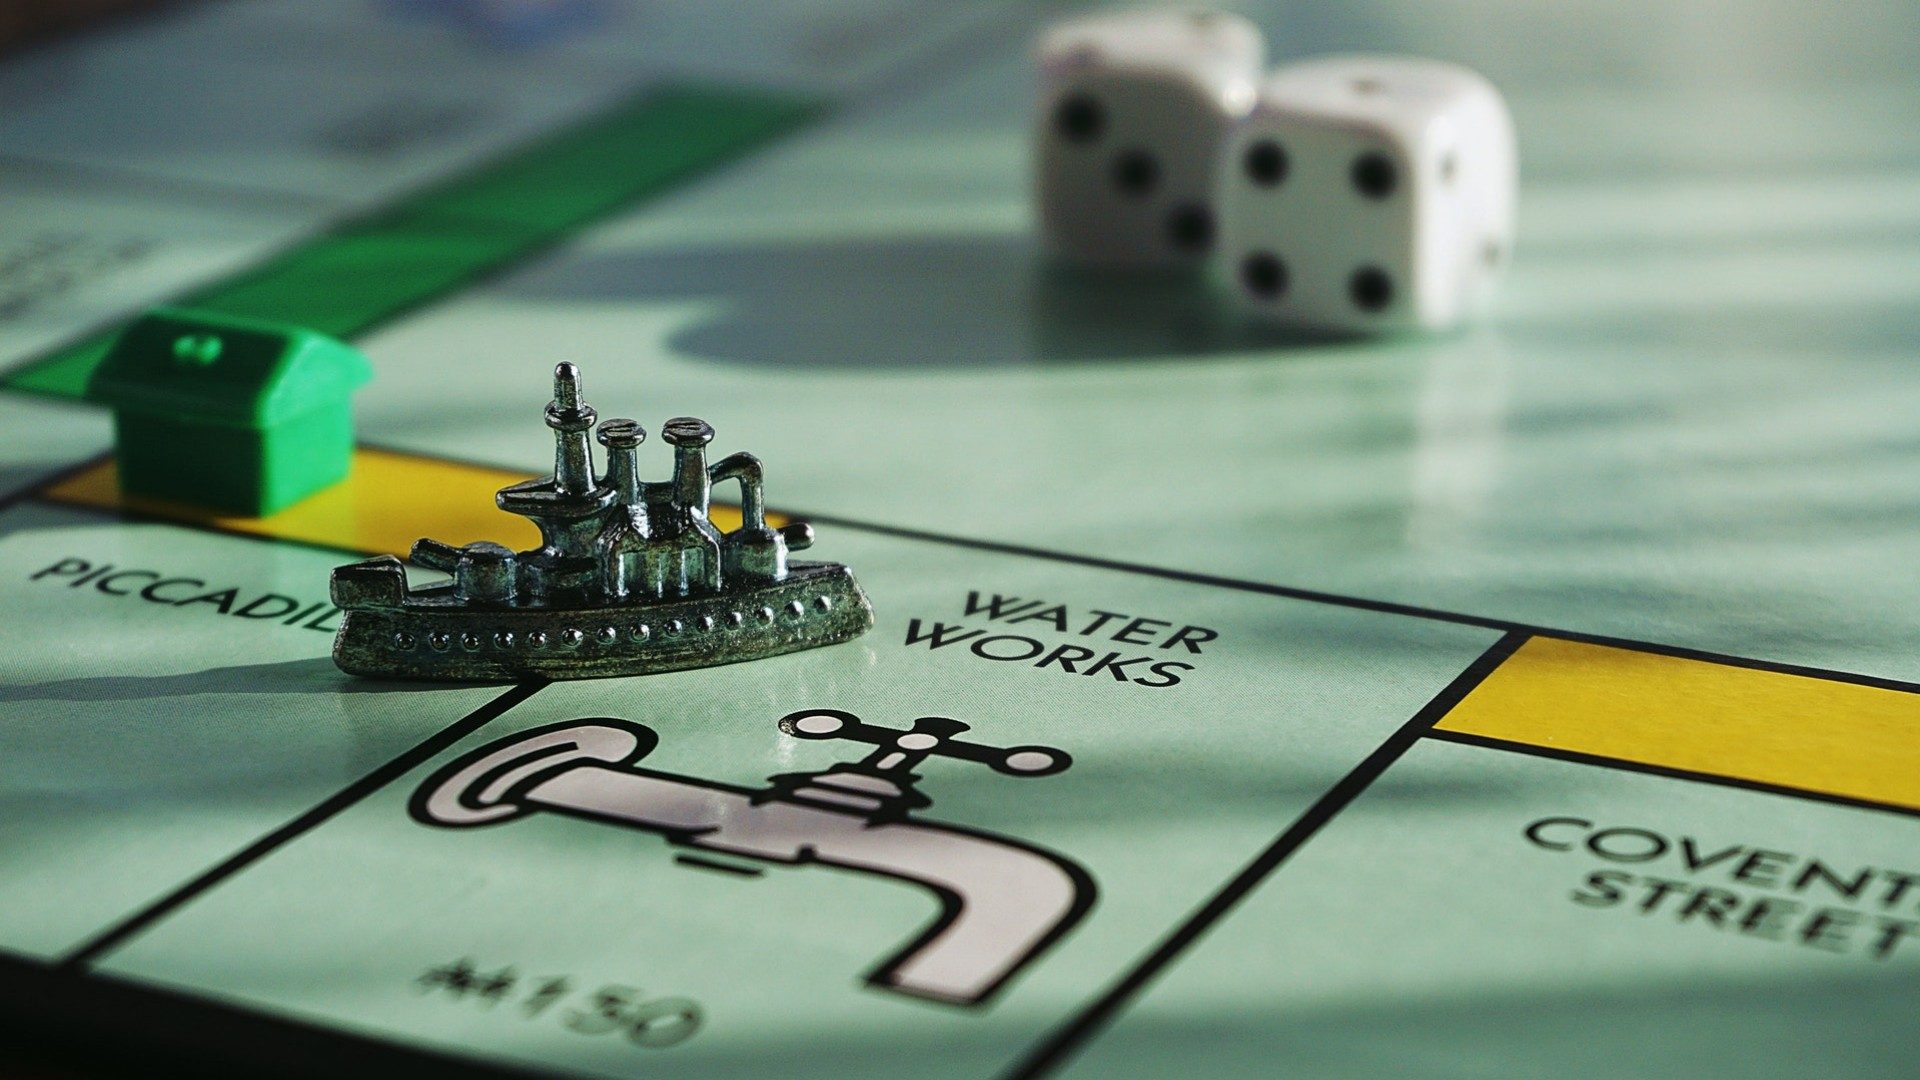 Ein Monopoly-Spiel mit einem Schiff als Spielfigur und Häusern und Würfeln im Hintergrund.